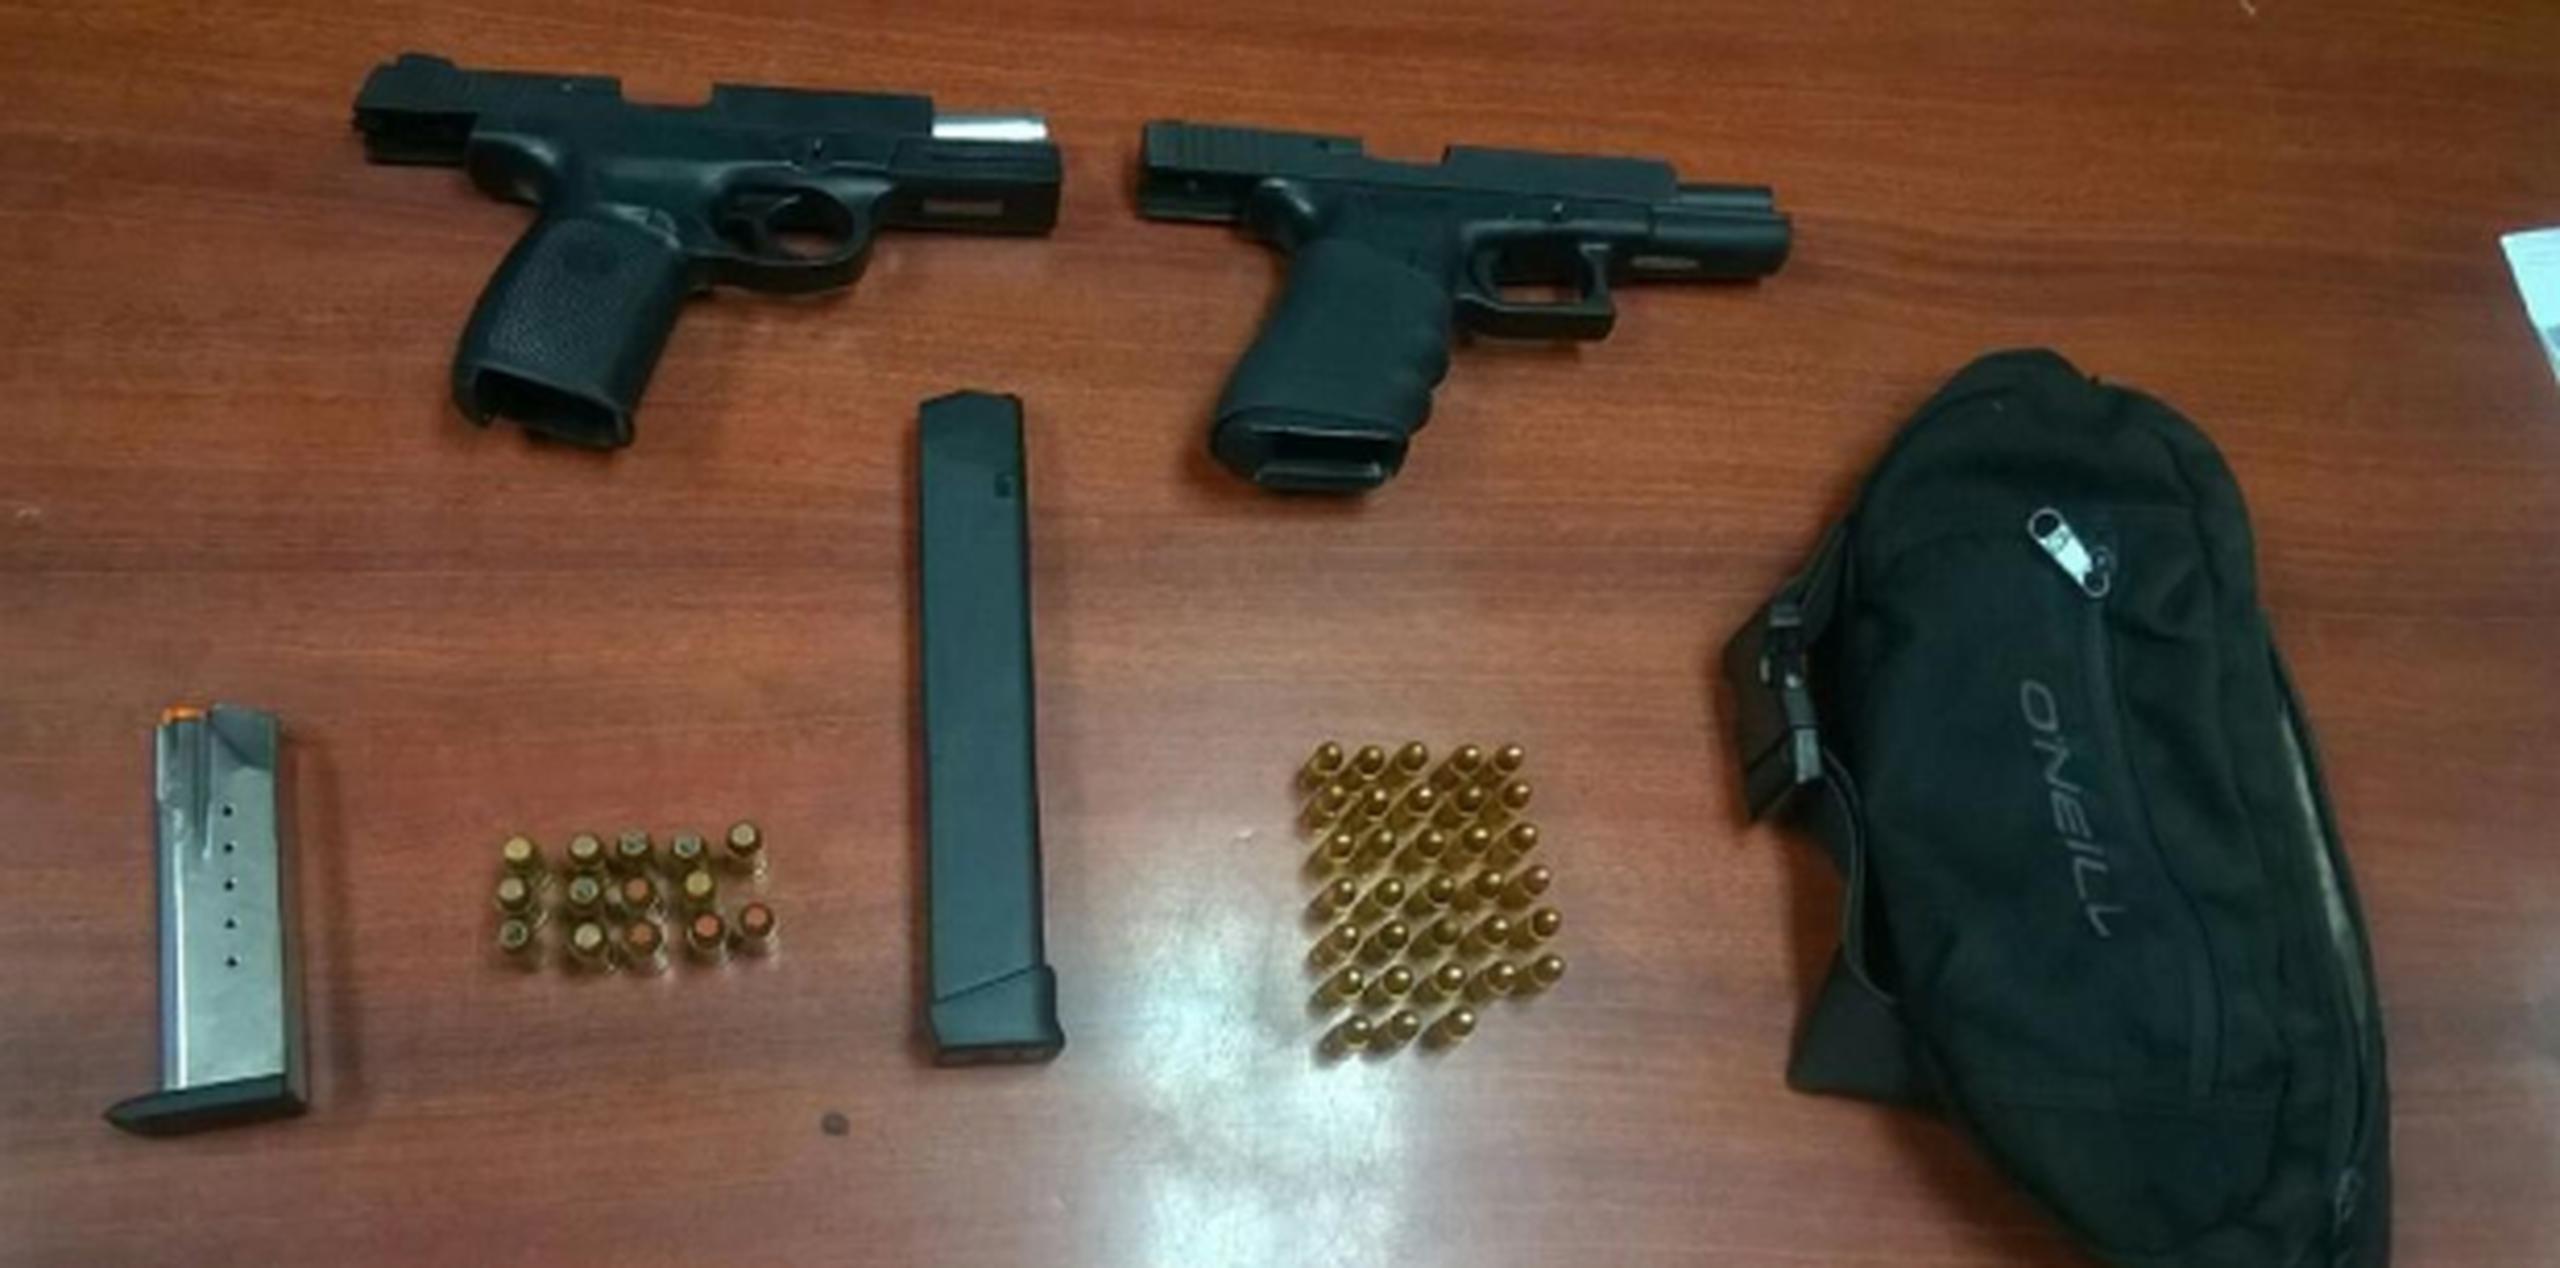 Tras la intervención, los agentes de la División de Drogas de Aguadilla le ocuparon dos pistolas cargadas, una marca Glock de calibre .40, otra Smith & Wesson de calibre 9 milímetros, un cargador y $133 en efectivo. (Suministrada)